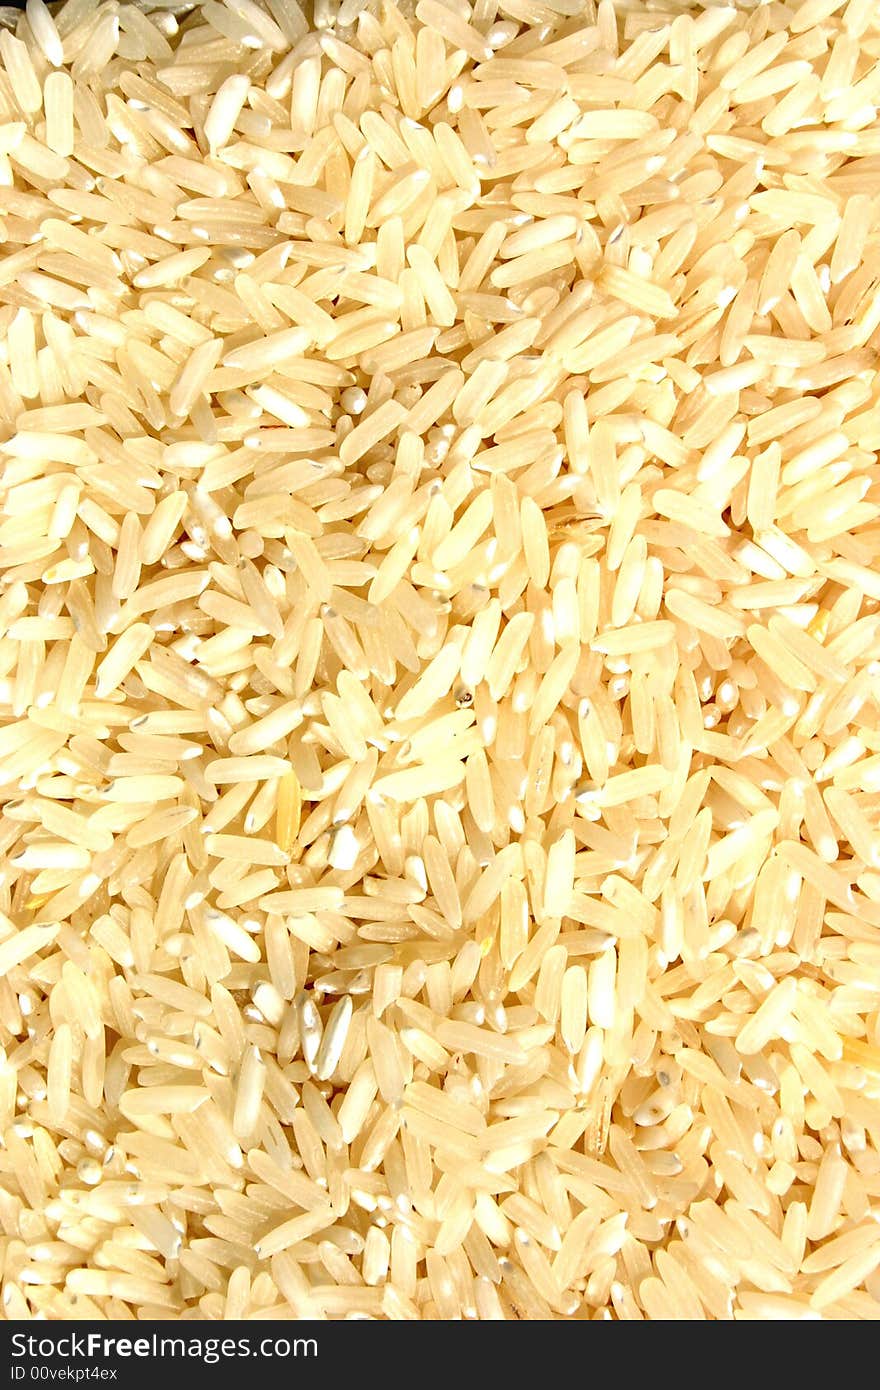 Close up abstract photo of basmati rice grains